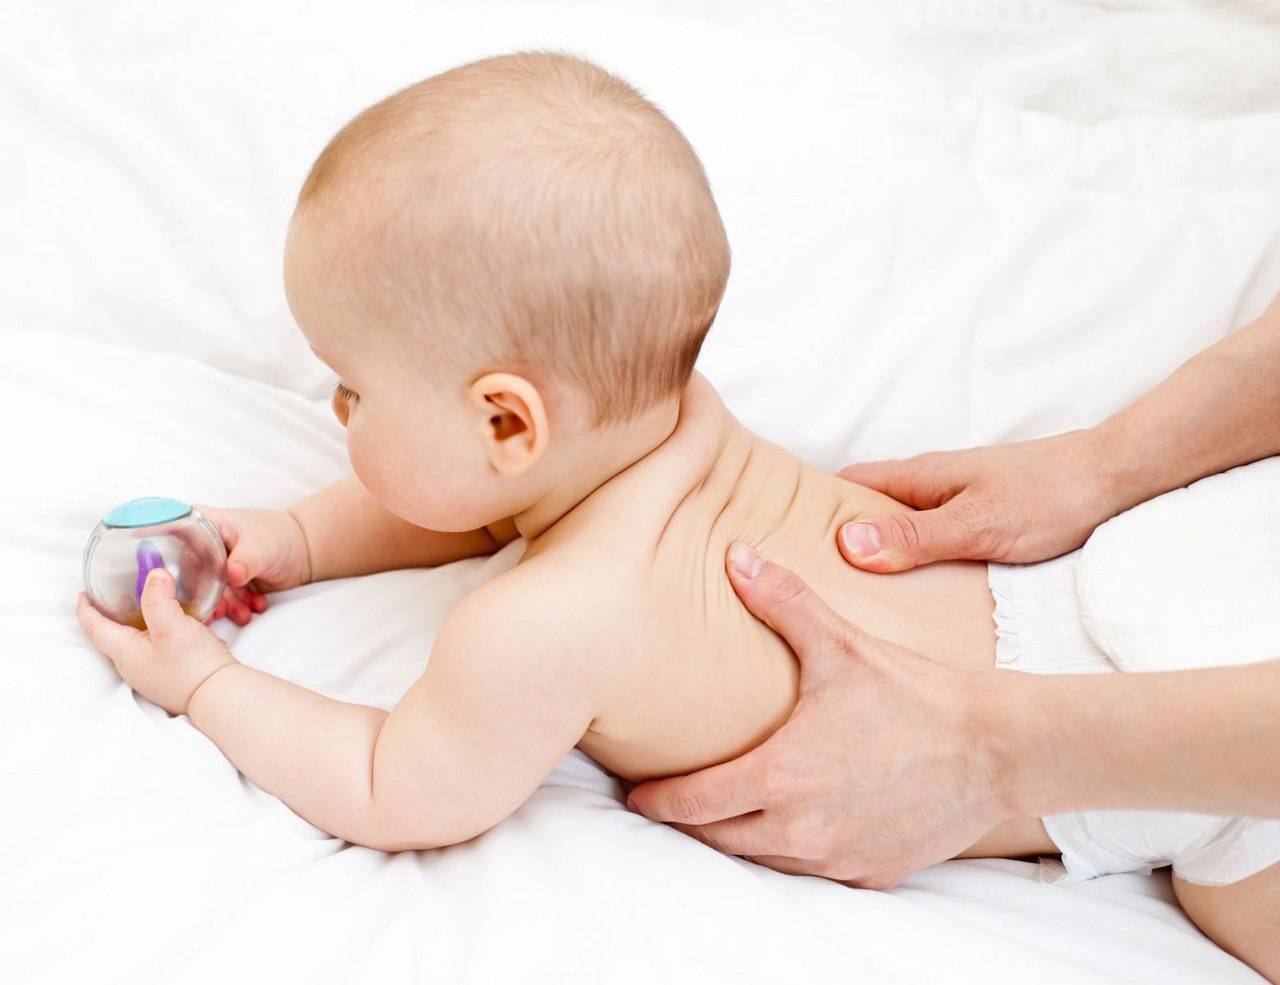 Нужно ли лечить мышечную дистонию у новорожденного ребенка?